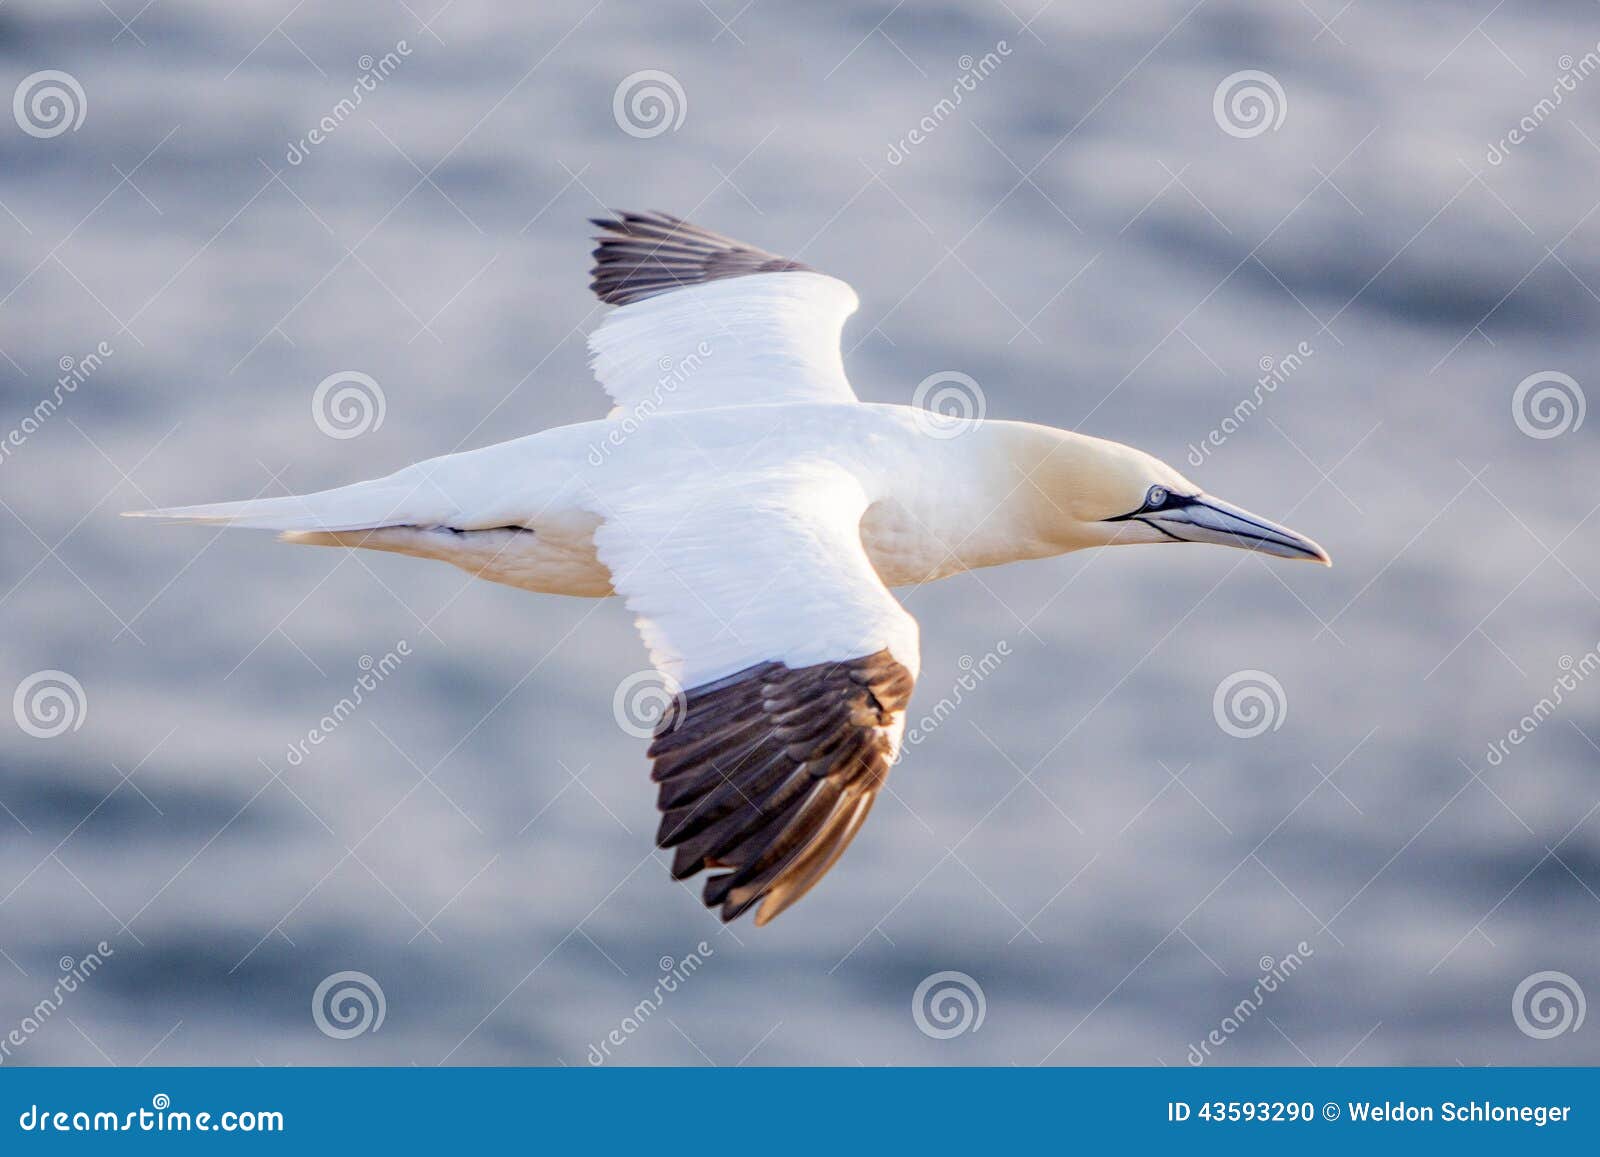 northern gannet in flight